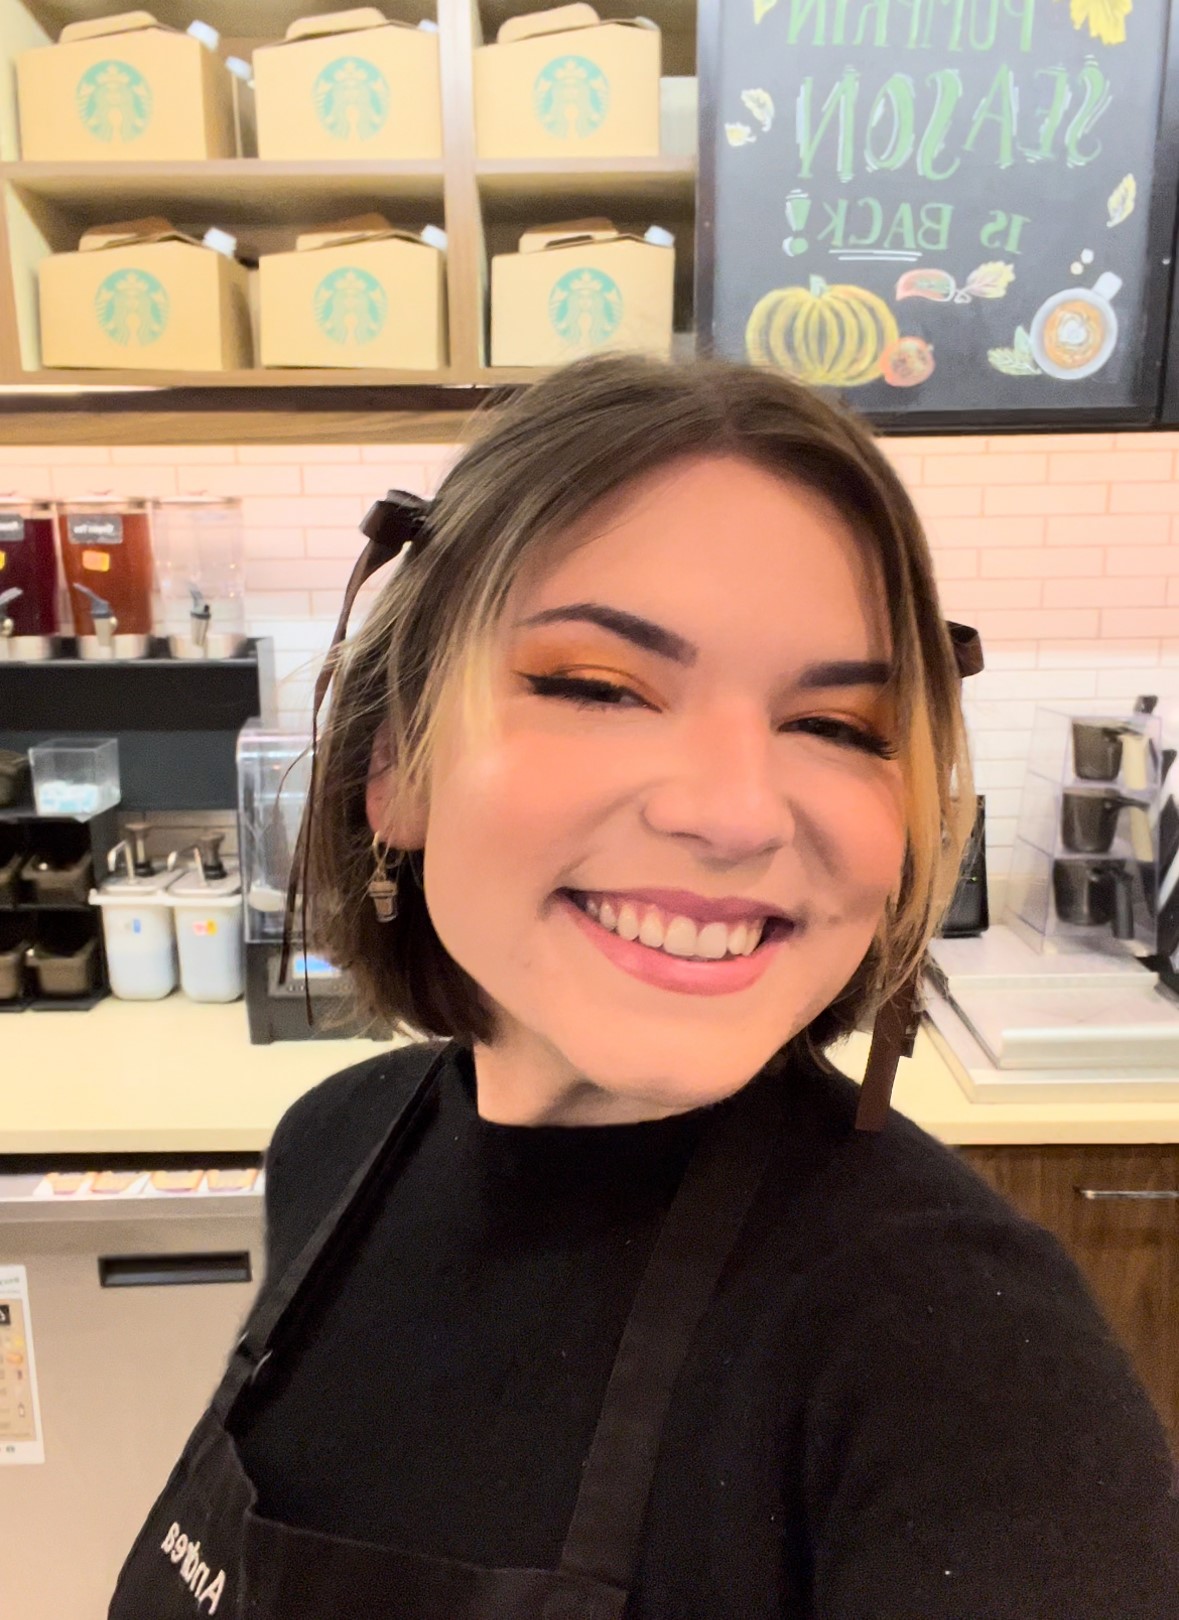 Une personne portant un casque d’écoute dans un magasin Starbucks prend la pose en souriant.